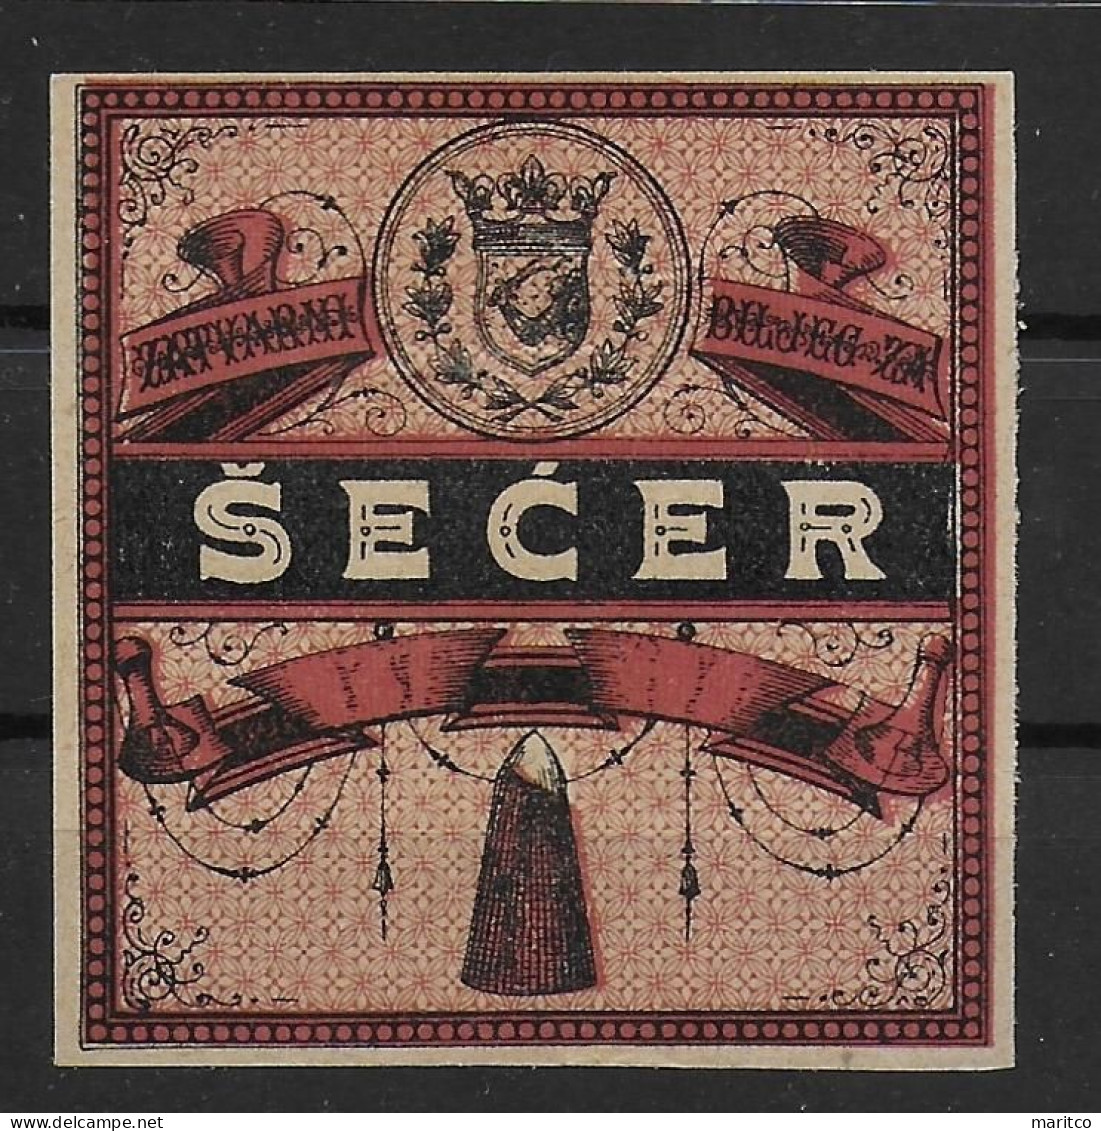 Österreich Bosnien-Herzegowina Zucker Verschlussmarke 1890 Stempelmarken Fiscal Revenue Stamps - Revenue Stamps